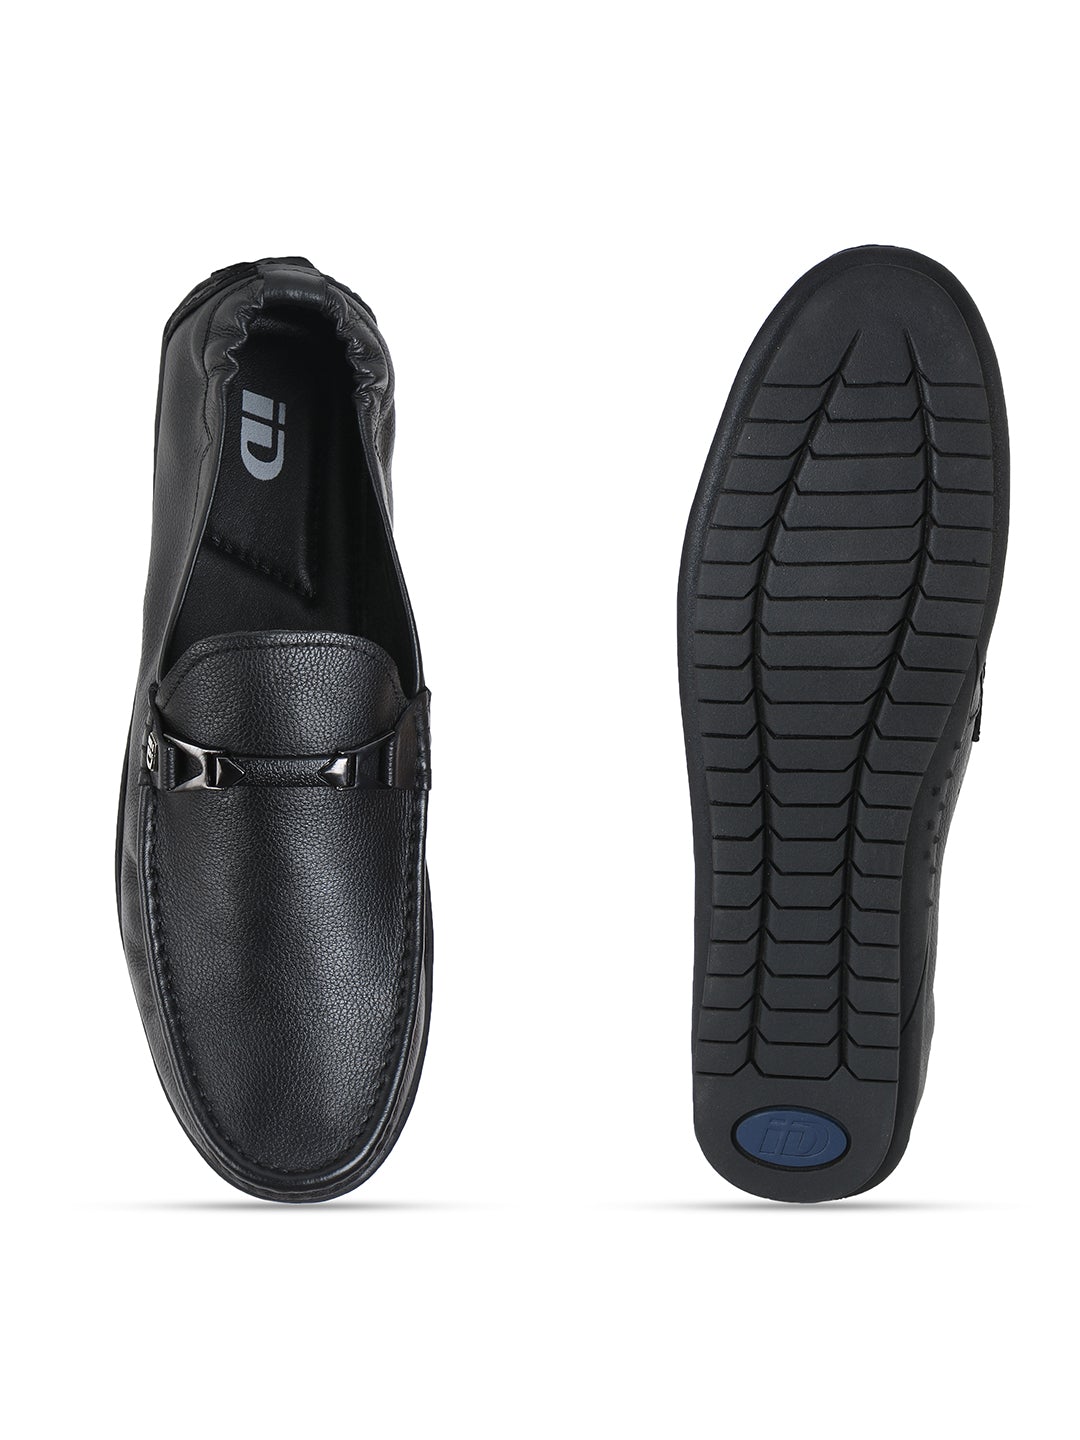 Footwear, Men Footwear, Black Driving Shoes